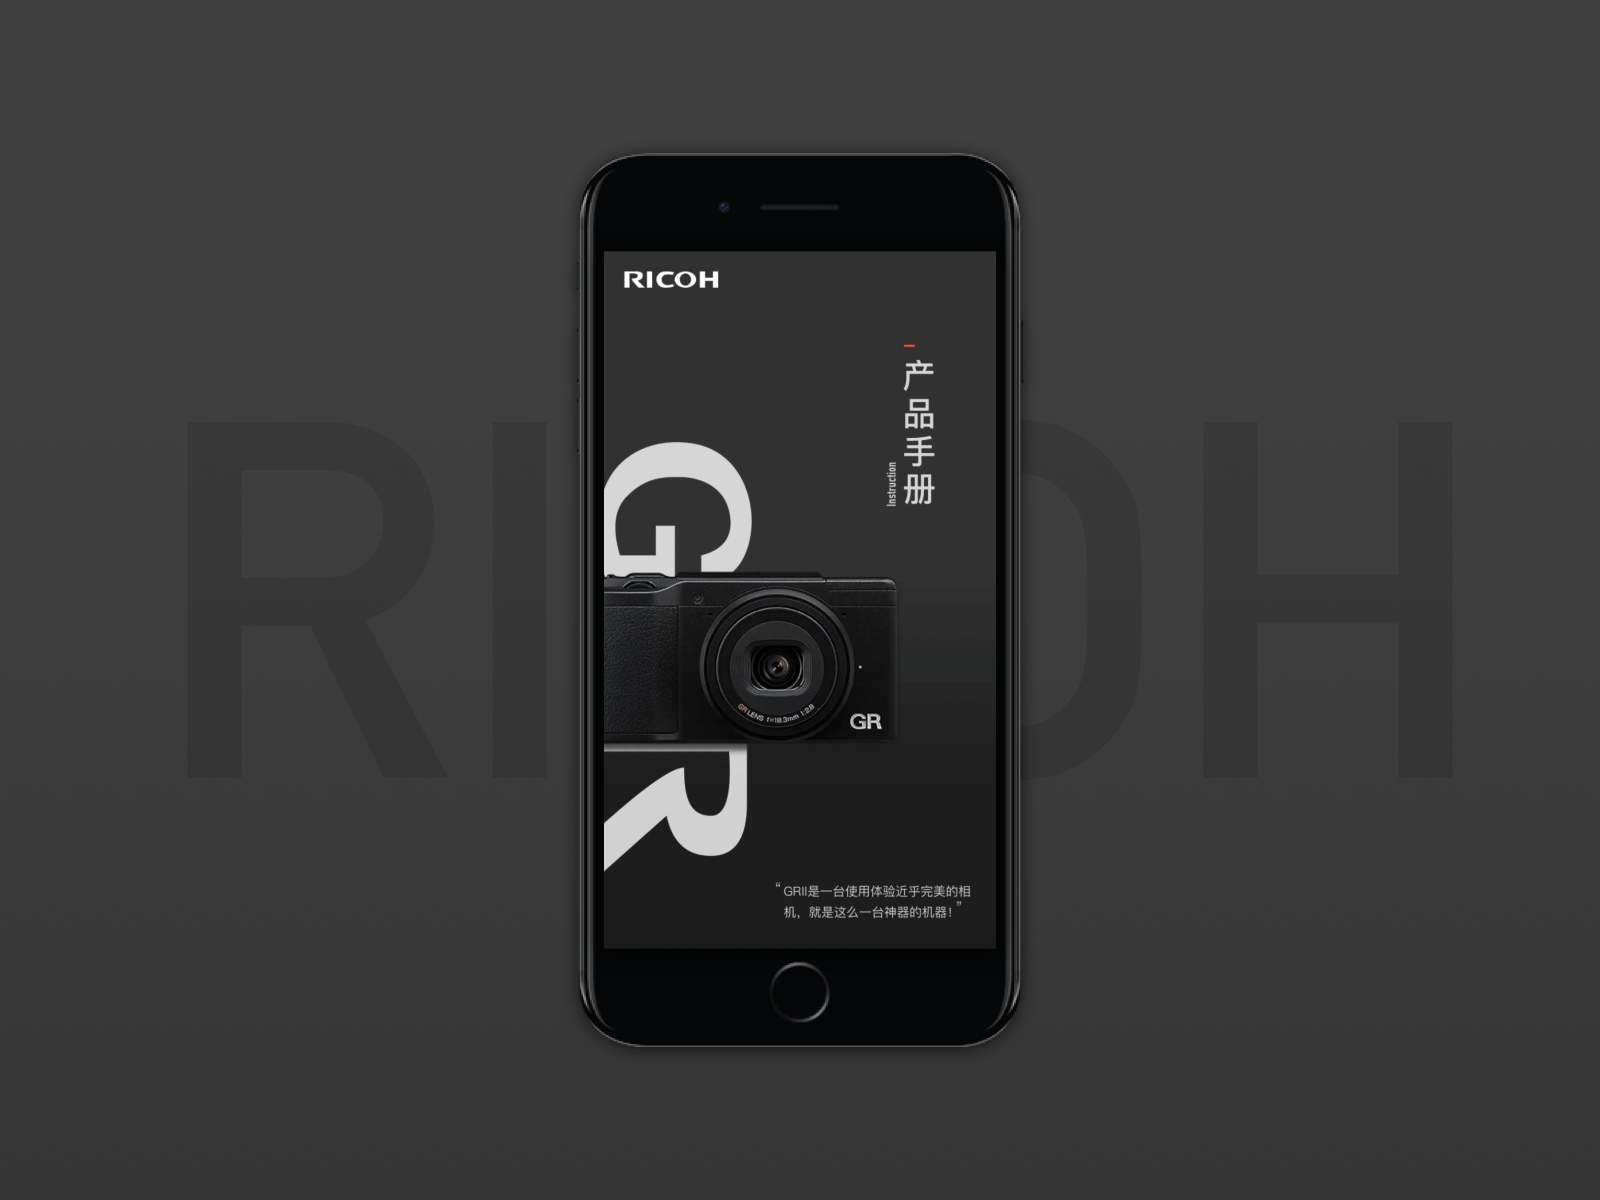 The Ricoh Gr 2 App